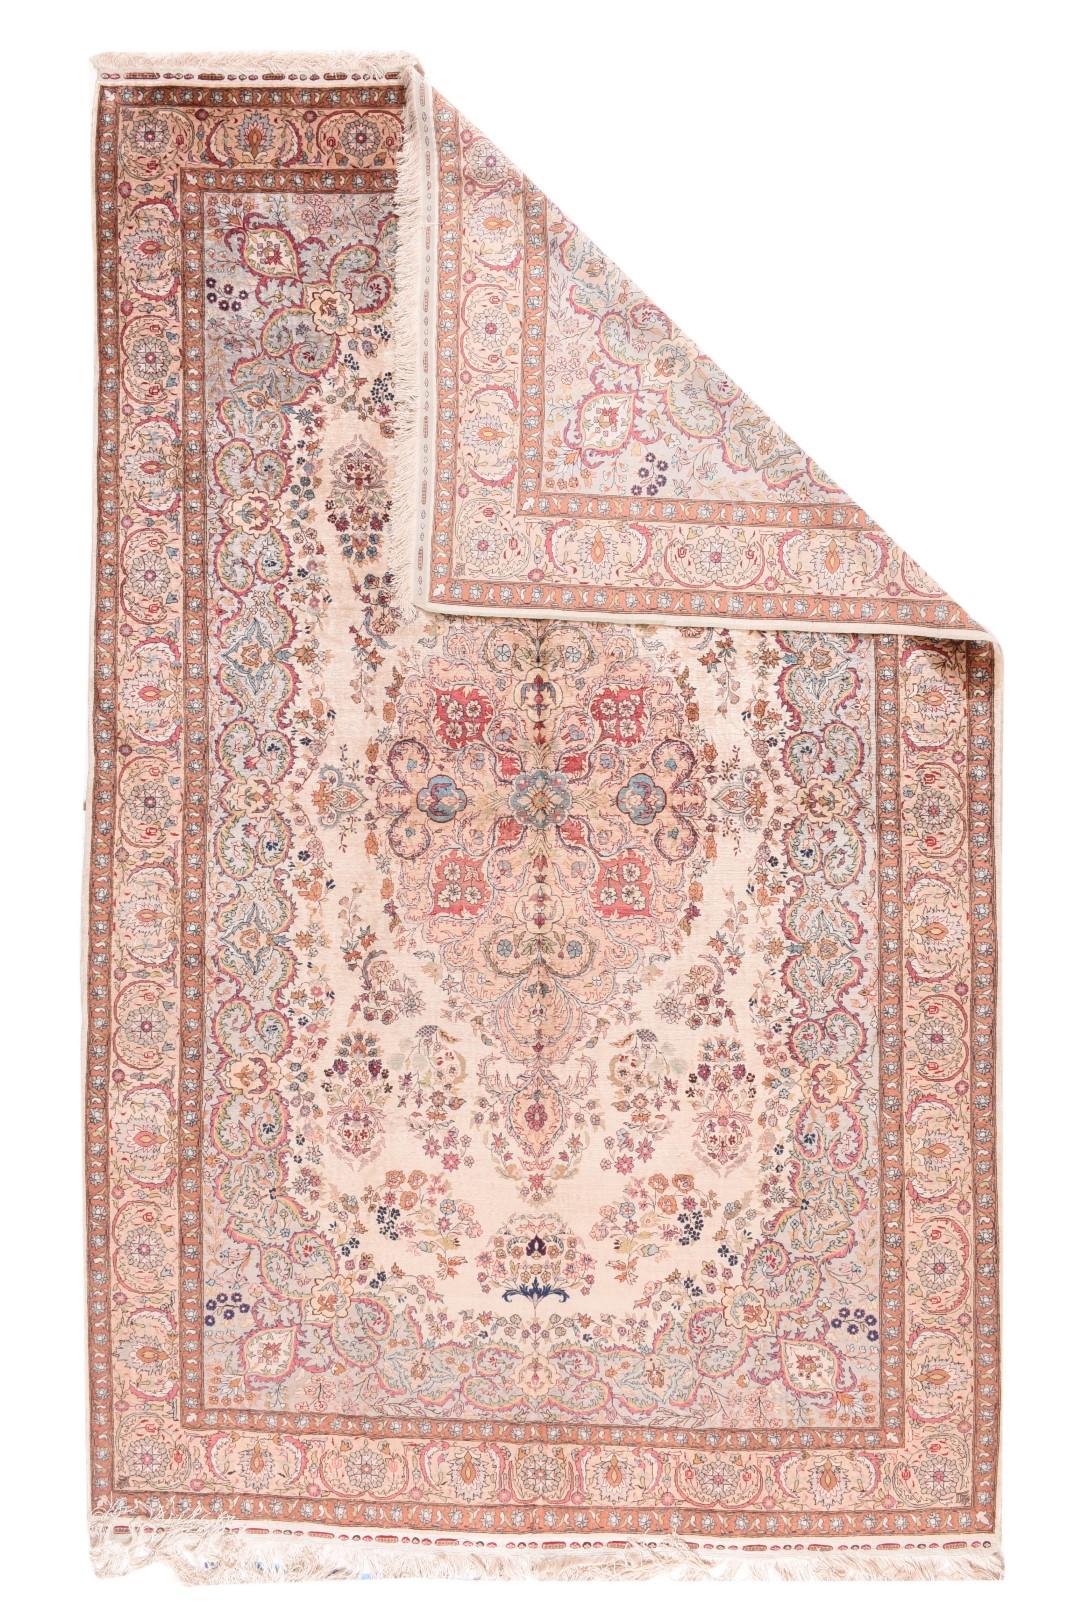 Vintage Ivory Herekeh rug. Measures: 6.5'' x 10.4''.